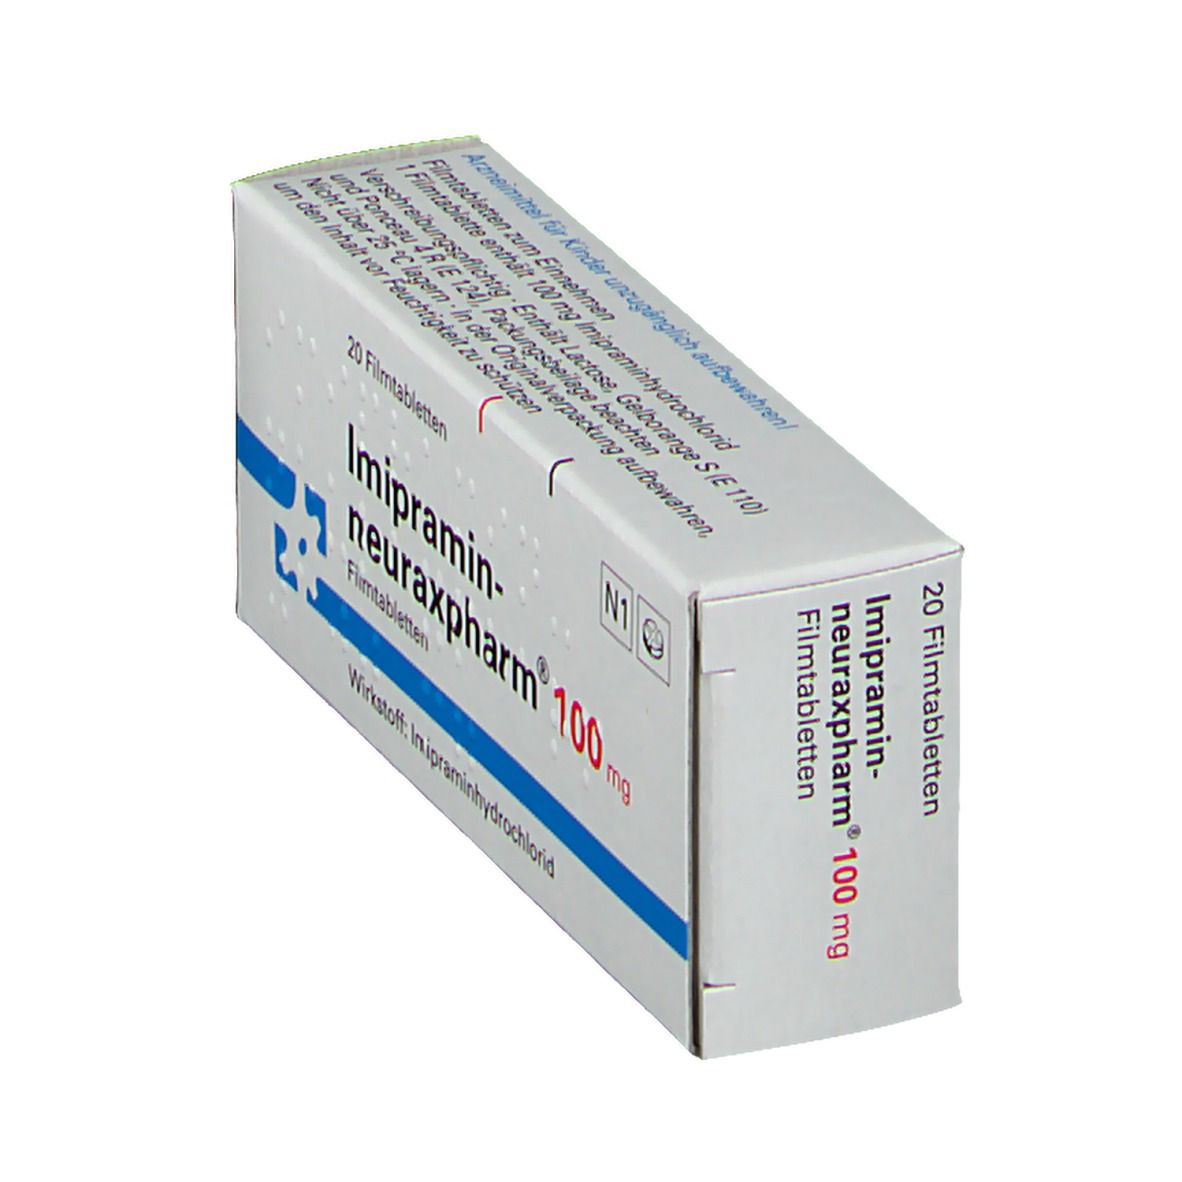 Imipramin-neuraxpharm® 100 mg